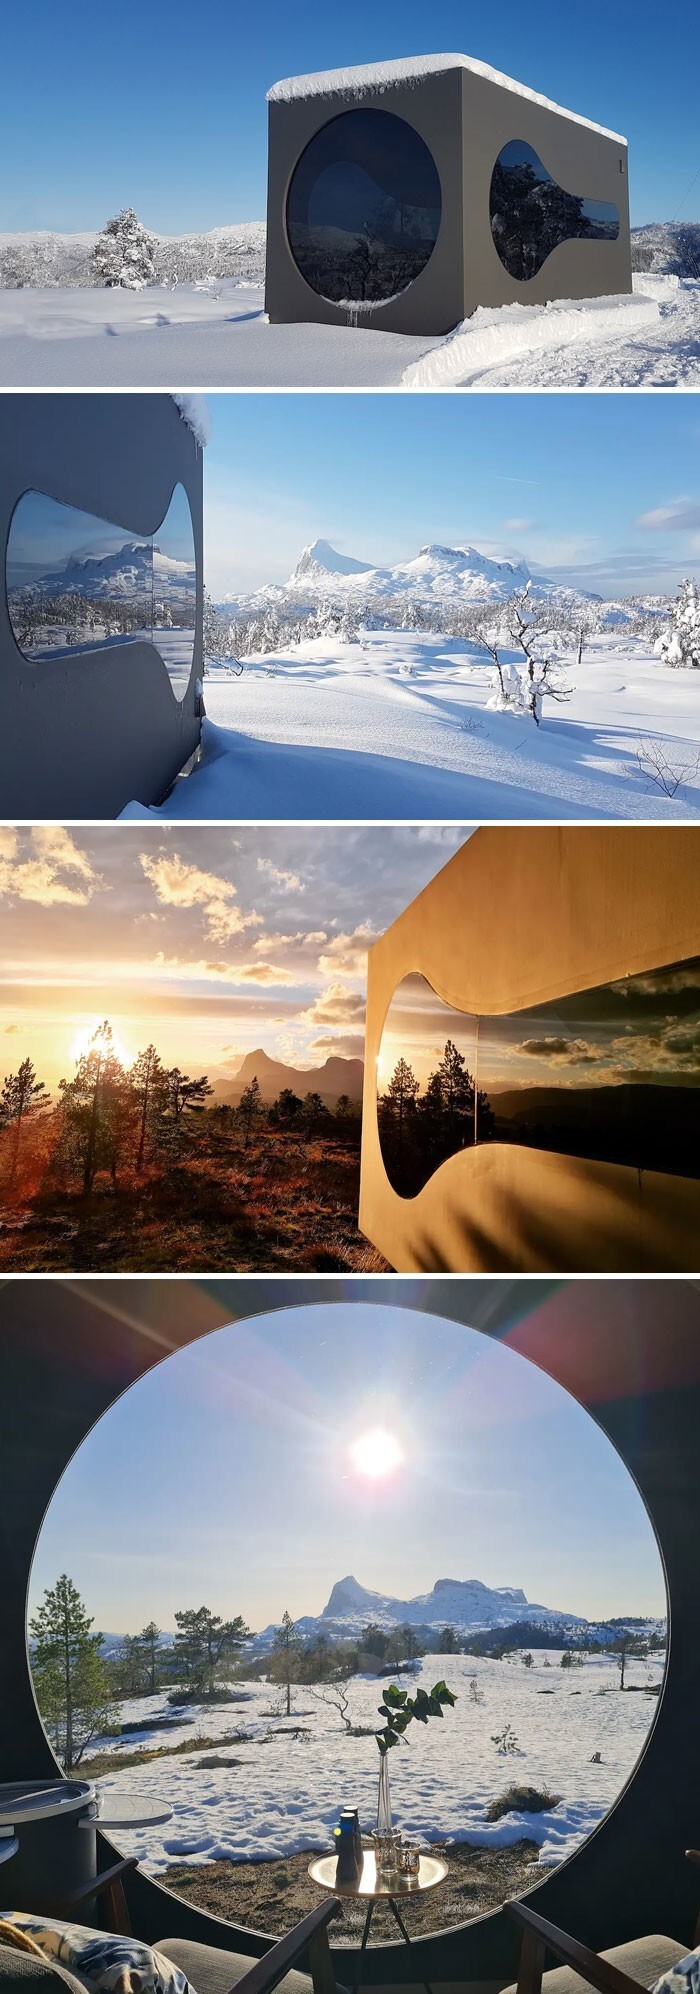 7. Захватывающий вид на горы из уютного "скворечника". Гаулар, Согн-Ог-Фьюране, Норвегия